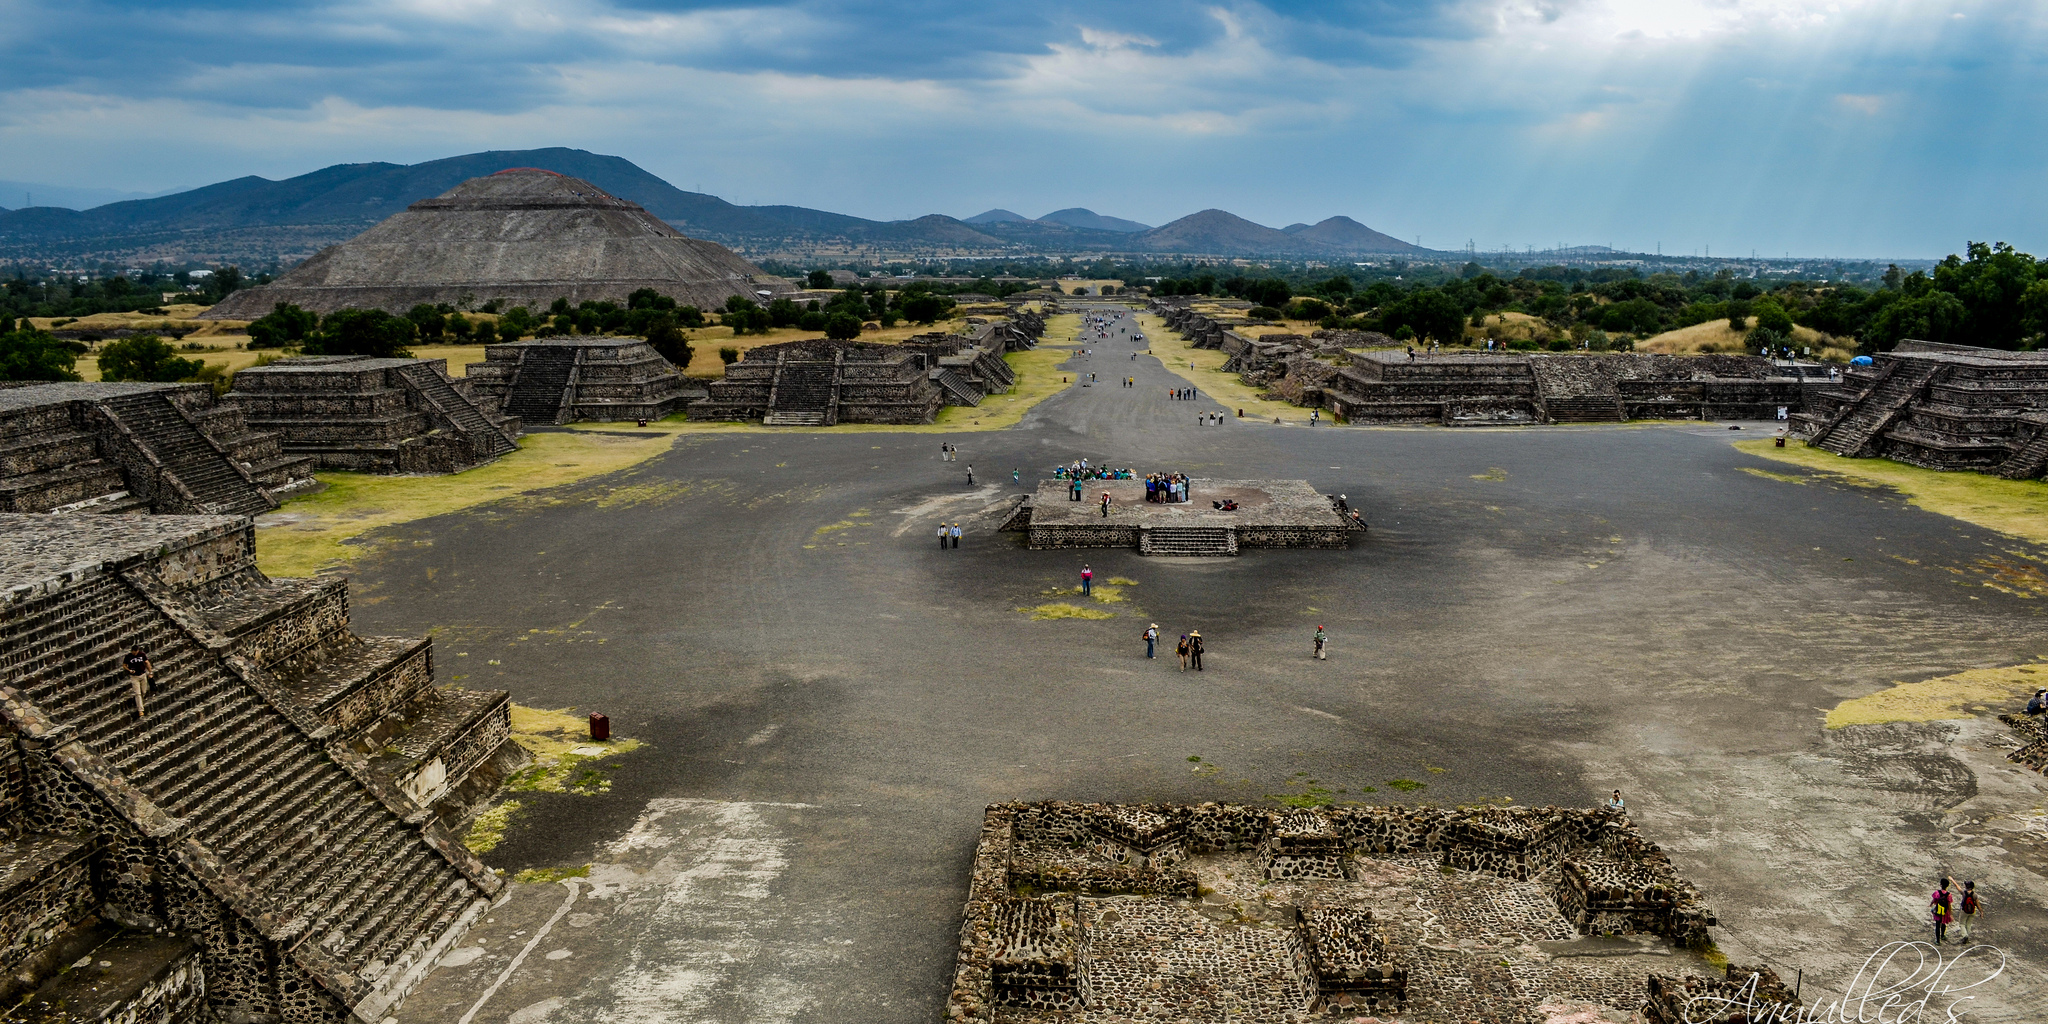 Visita zonas arqueológicas de México sin salir de casa, con recorridos virtuales | El Imparcial de Oaxaca